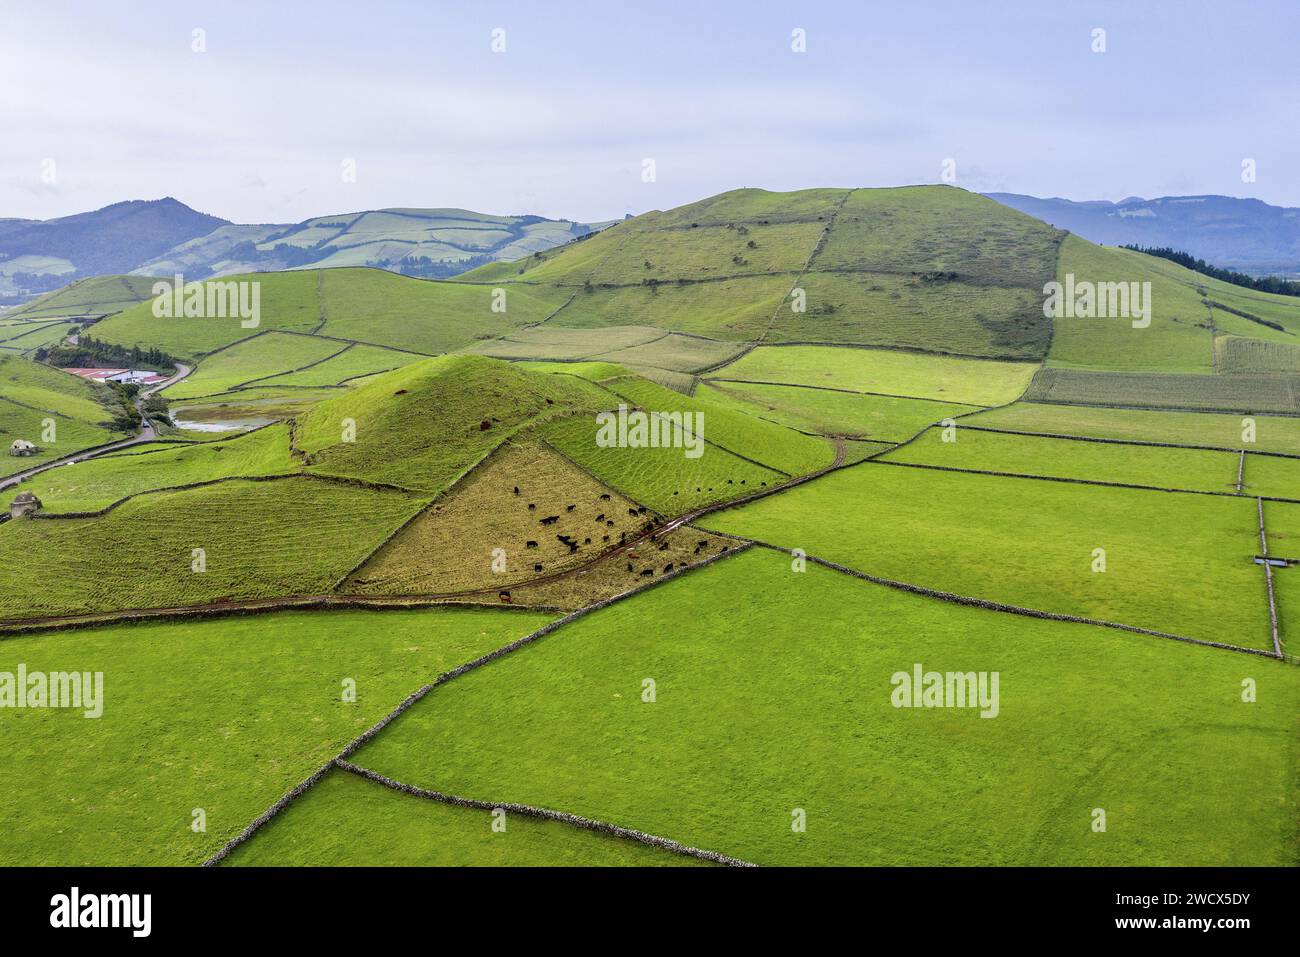 Portugal, archipel des Açores, île de Terceira, patchwork de pâturages verdoyants entourés de murs de pierres sèches au milieu d'anciens volcans Banque D'Images